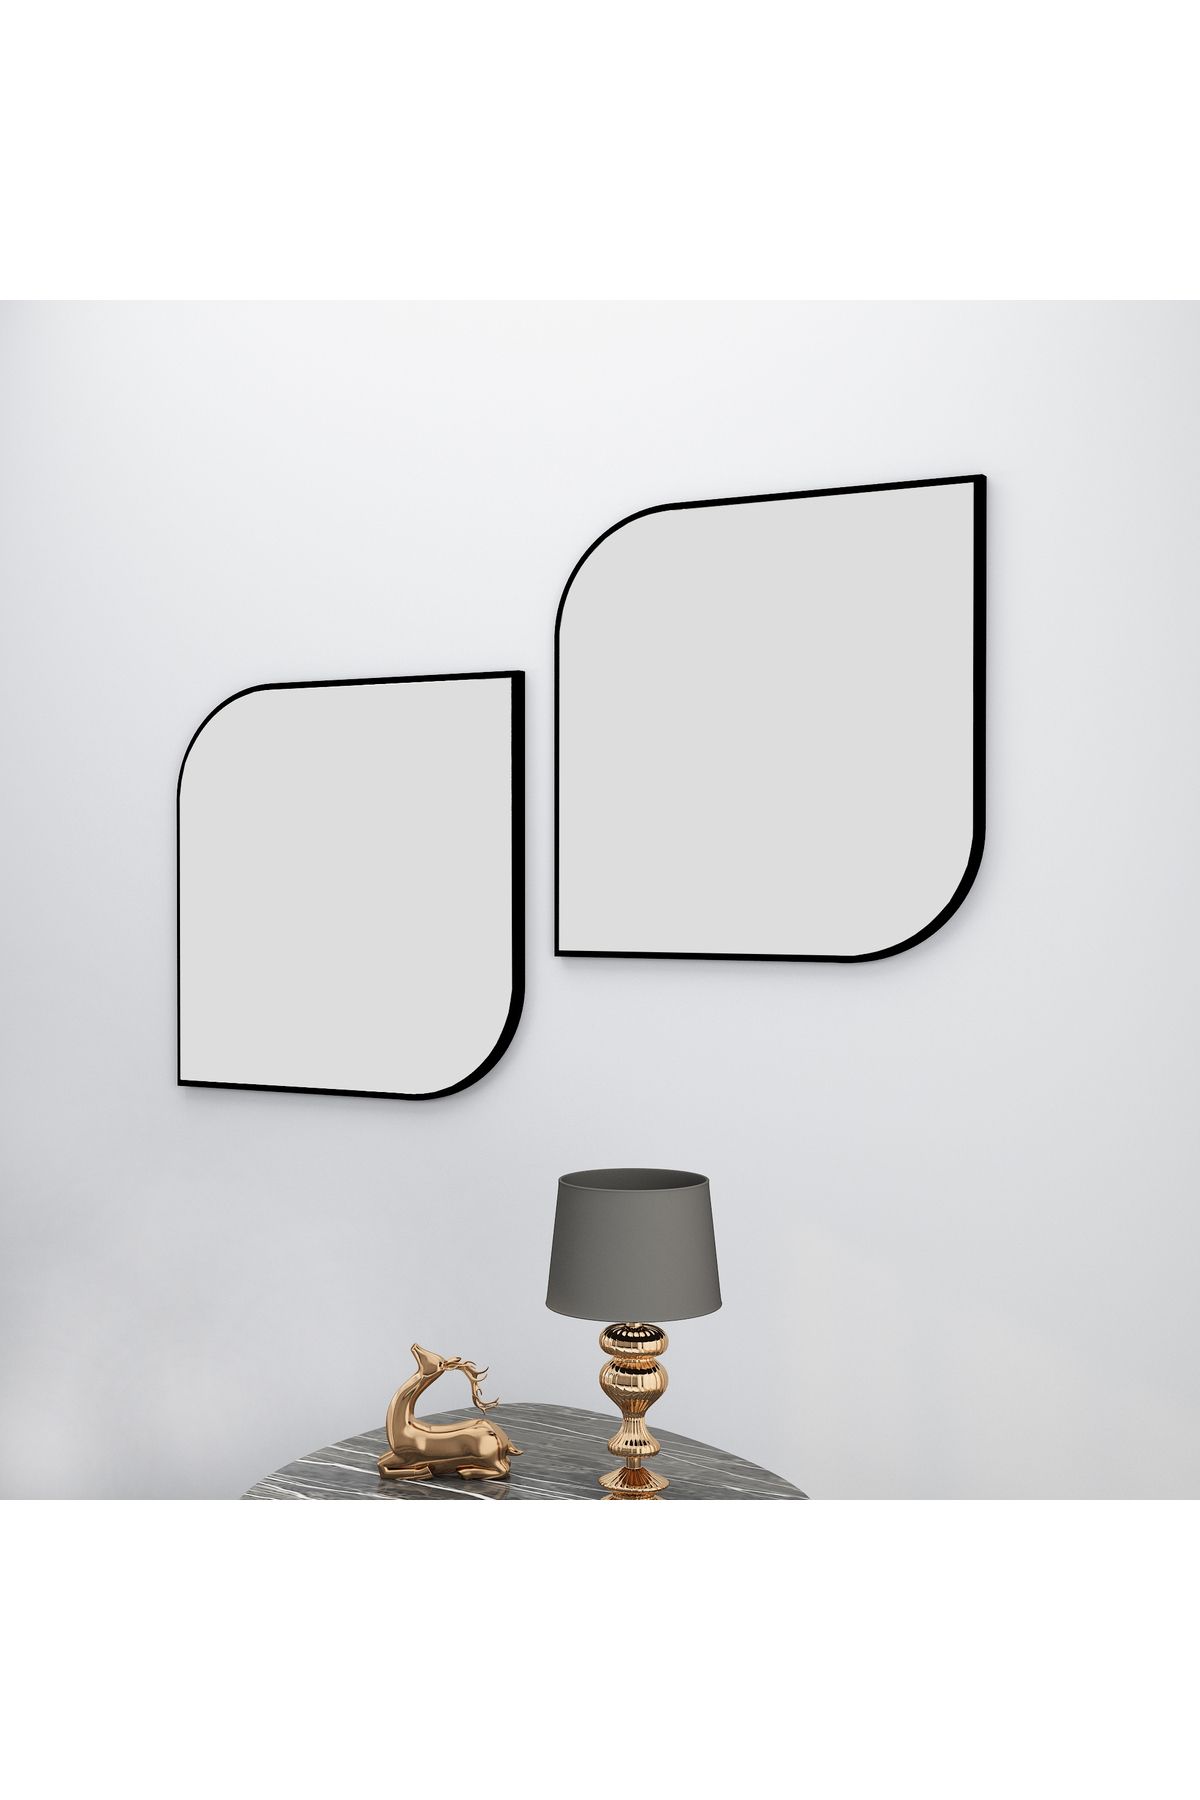 Arnetti Vero Siyah 2 Parçalı Modern Dekoratif Salon Ayna